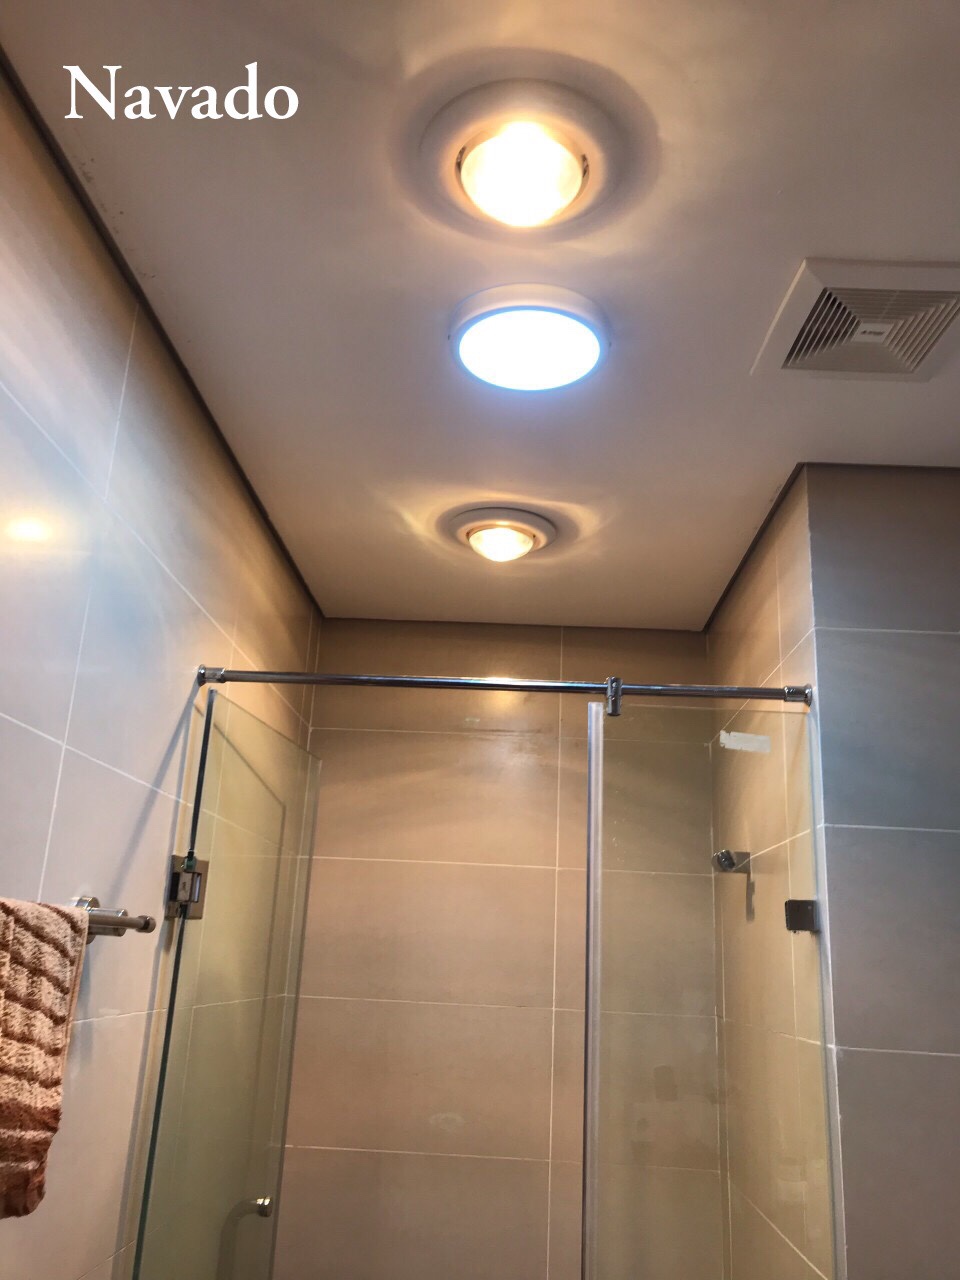 Giải pháp hoàn hảo cho những không gian nhỏ hẹp - đèn sưởi phòng tắm lắp trong vách tắm kính. Thiết kế tinh tế và tiện lợi, sản phẩm là sự lựa chọn hàng đầu cho những ai mong muốn tận dụng không gian tiện nghi và sang trọng hơn. Hãy truy cập trang web để mua hàng ngay hôm nay!